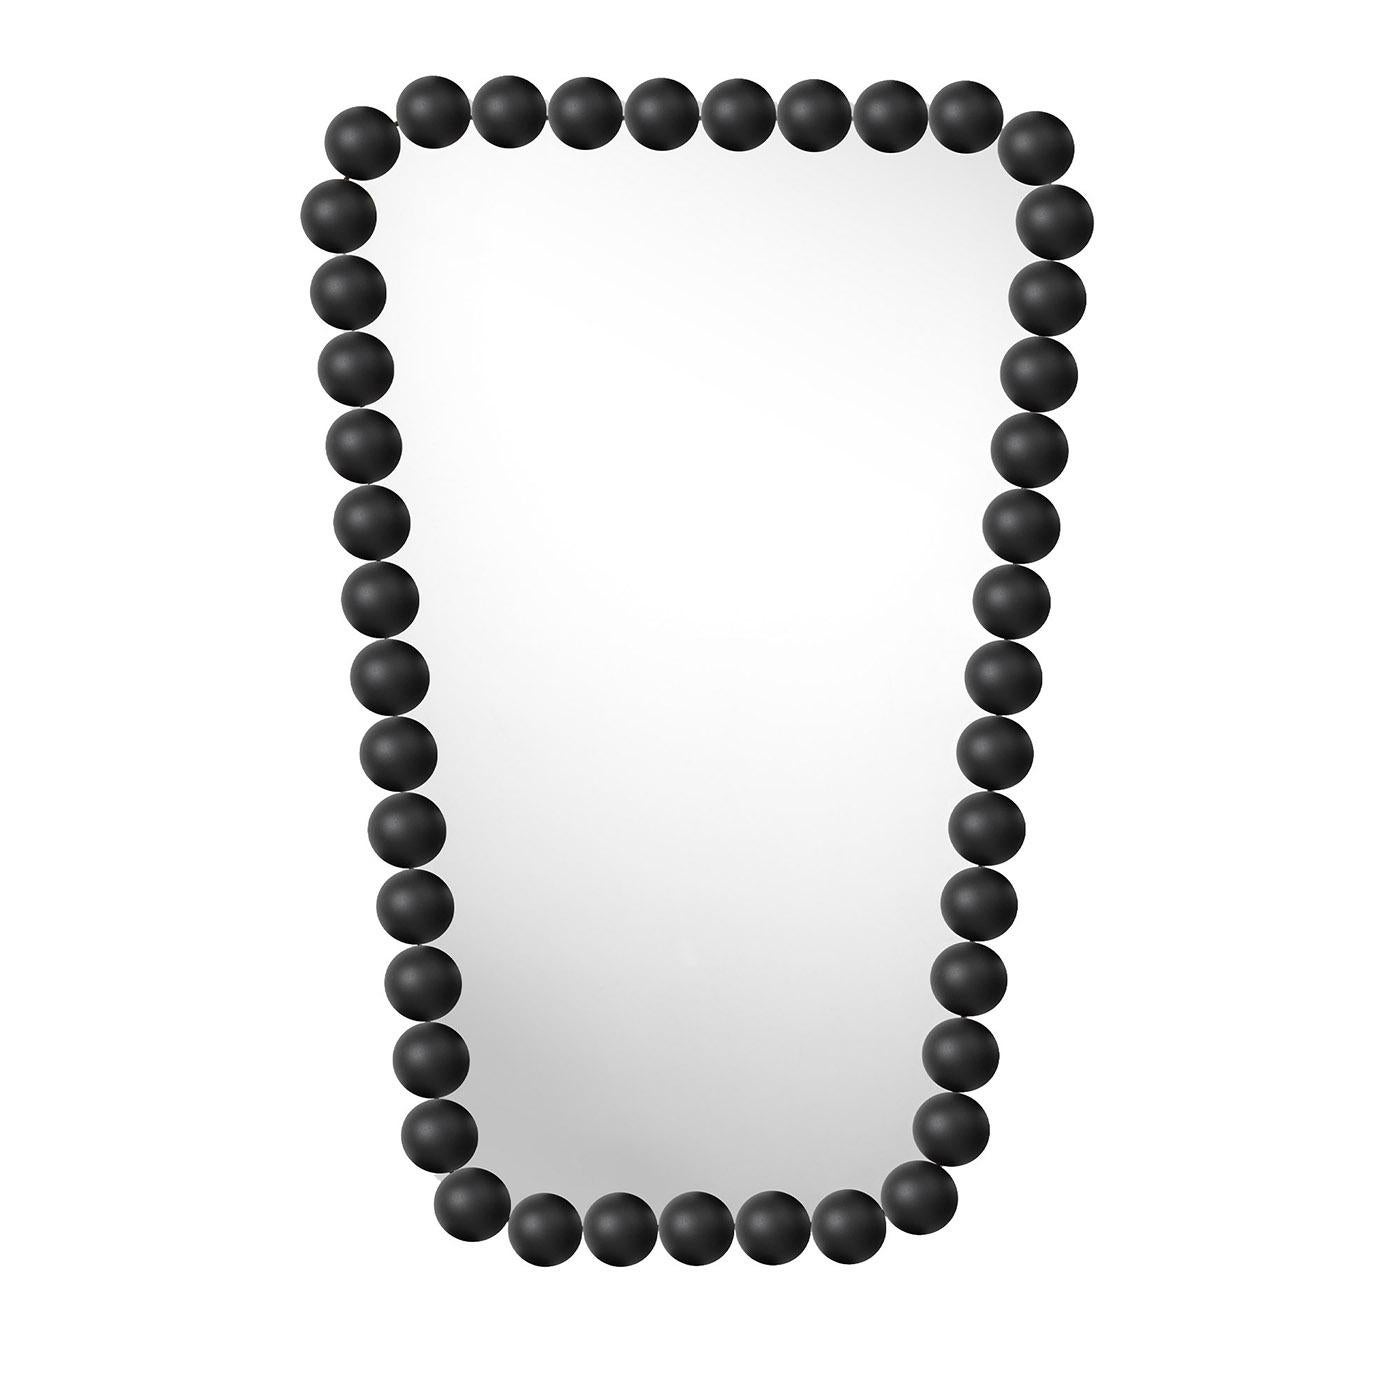 Dieser Wandspiegel, der an eine geformte, starre Kette aus eleganten Perlen erinnert, ist ein stilvolles Design von Nika Zupanc. Sie zeichnet sich durch ihre geometrische Inspiration aus, die sich zum einen in der Trapezform zeigt und zum anderen